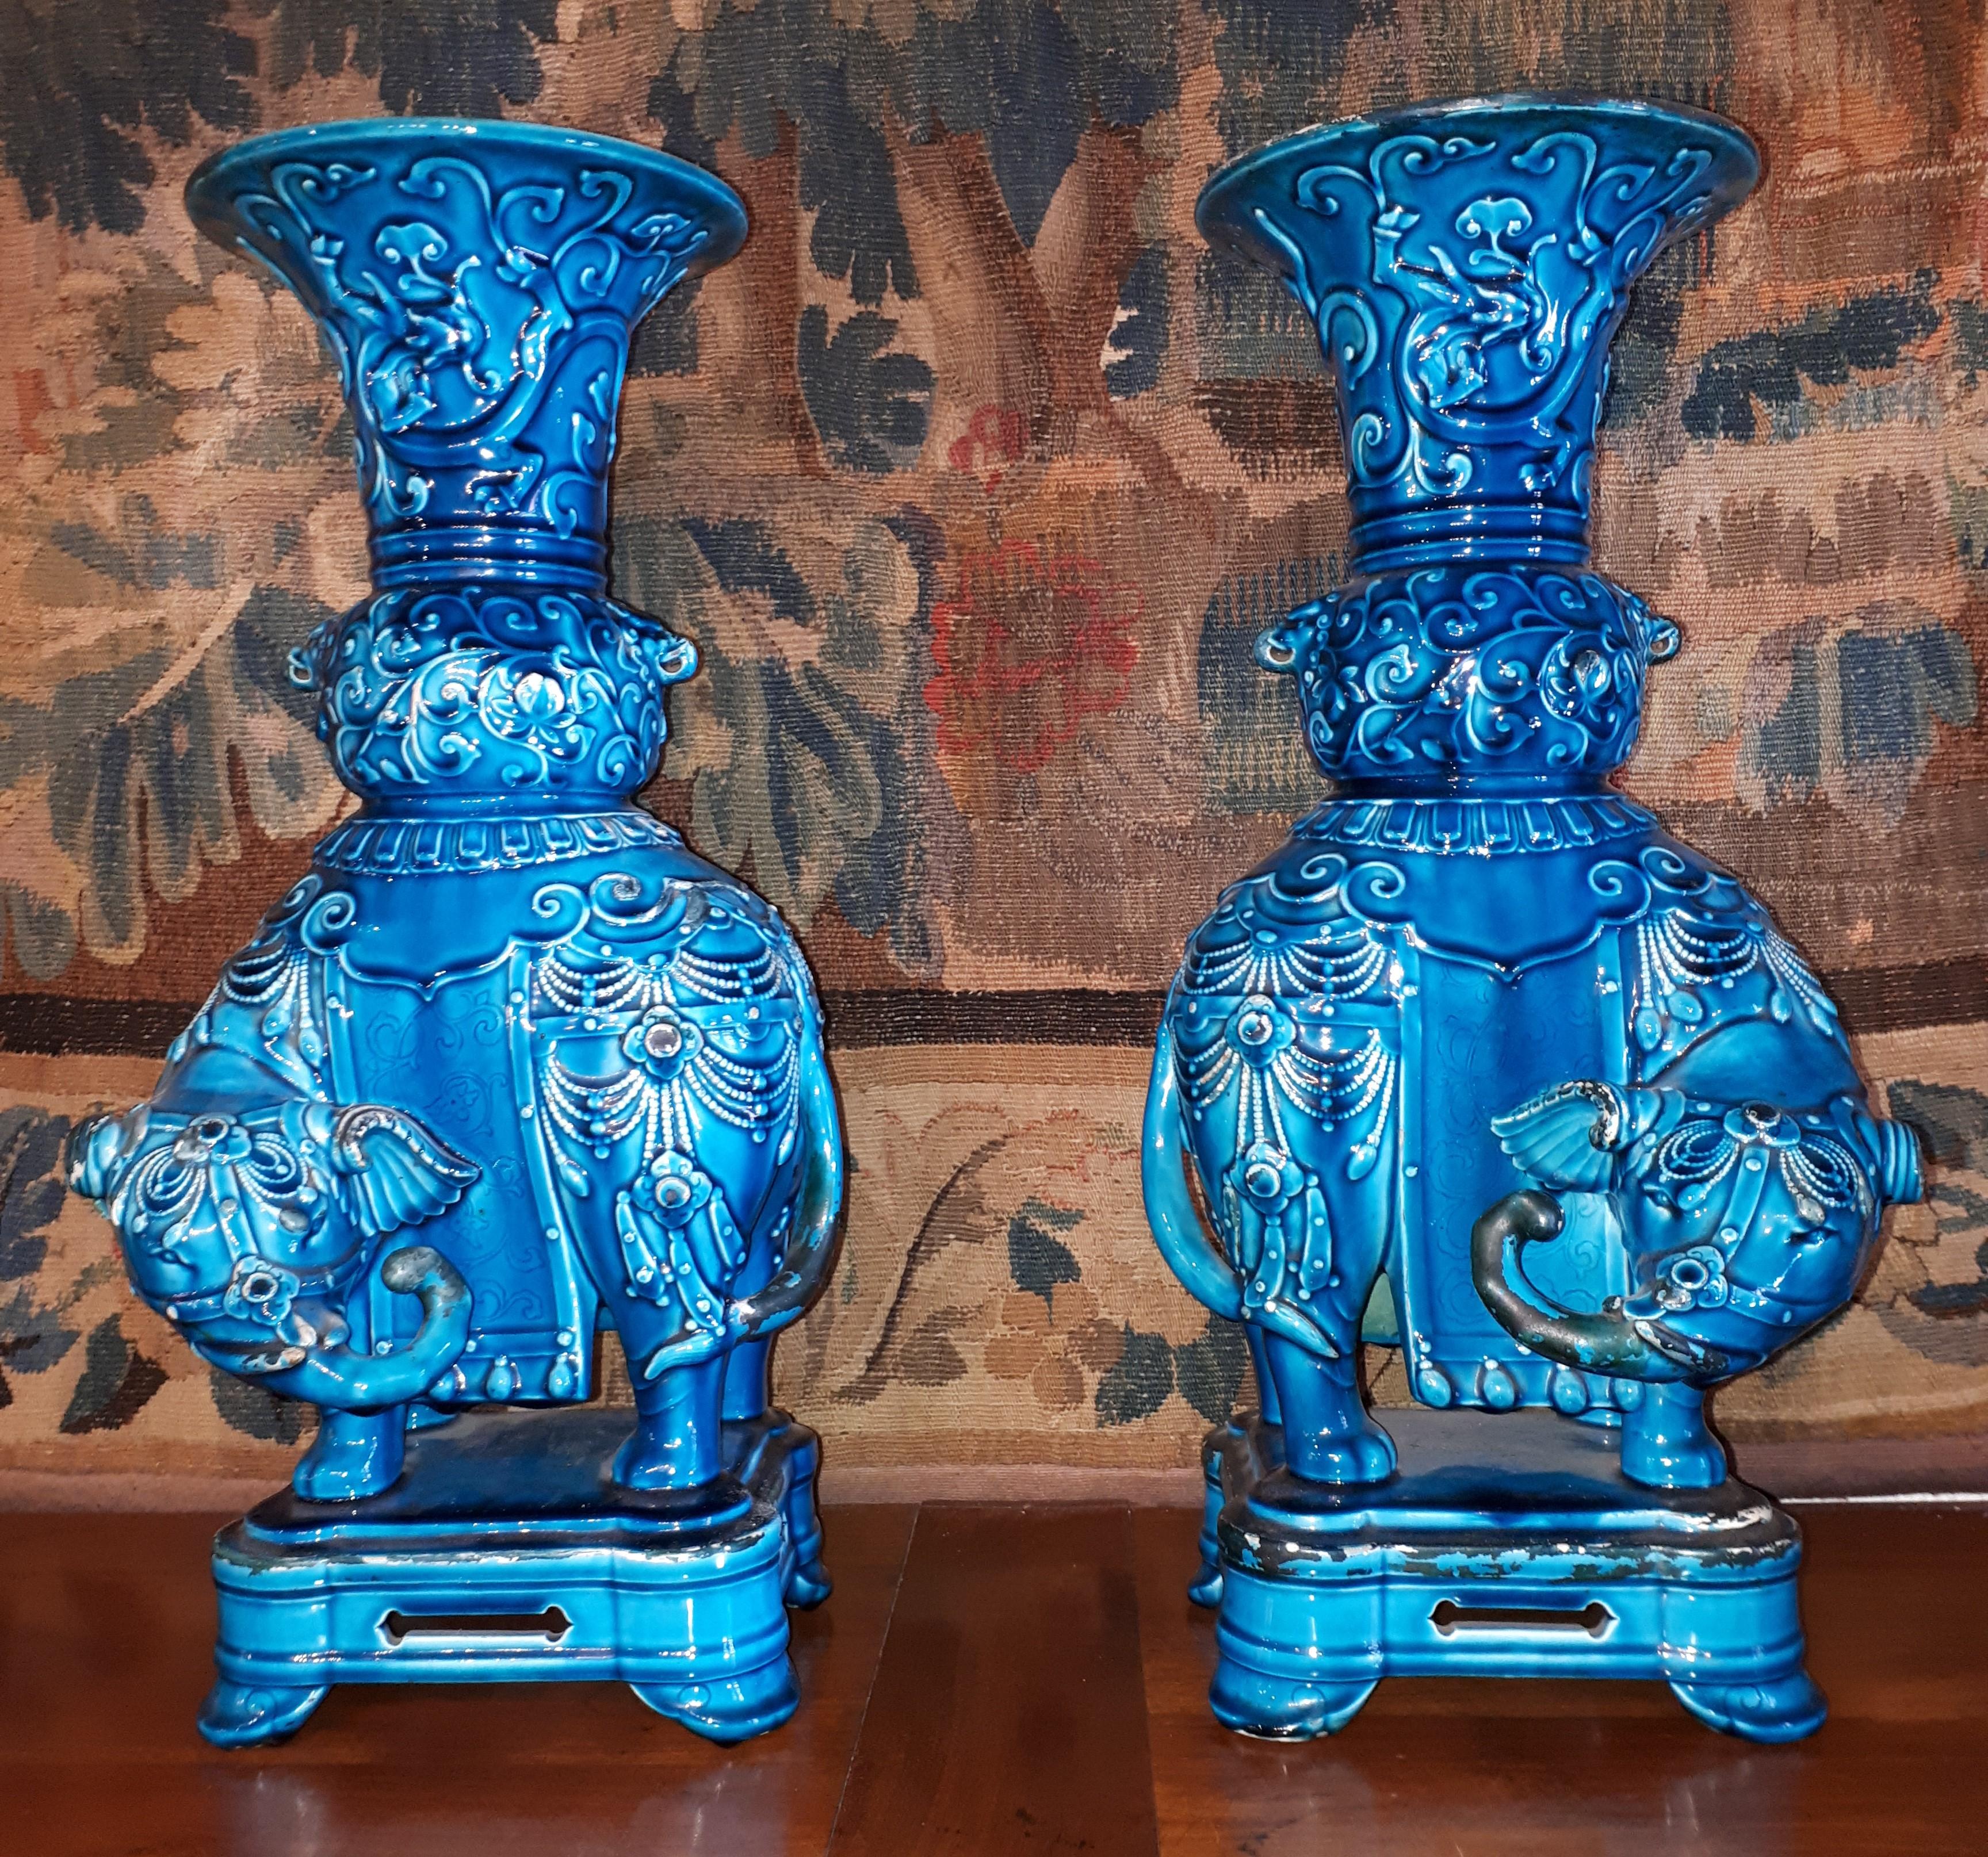 Rarissime paire de vases en céramique émaillée turquoise de forme Gu, portés par des éléphants et reposant sur une base ajourée terminée par quatre pieds évasés. Quelques manques d'émail sinon très bon état d'origine (pas de restauration).